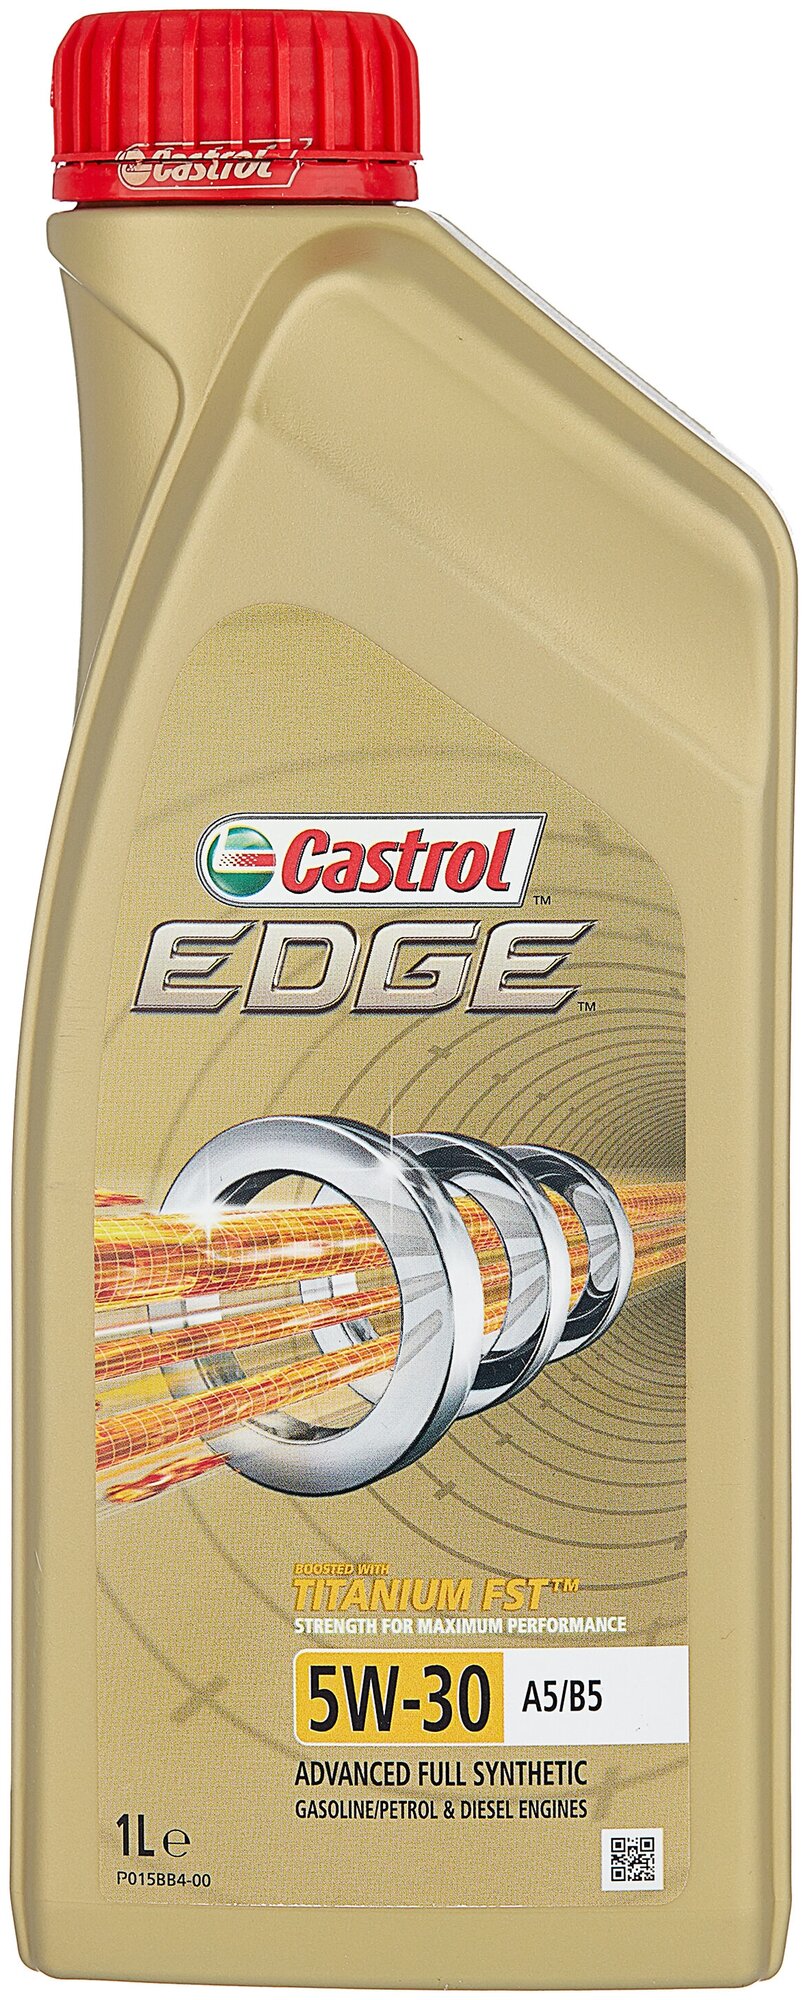 Синтетическое моторное масло Castrol Edge 5W-30 A5/B5, 1 л